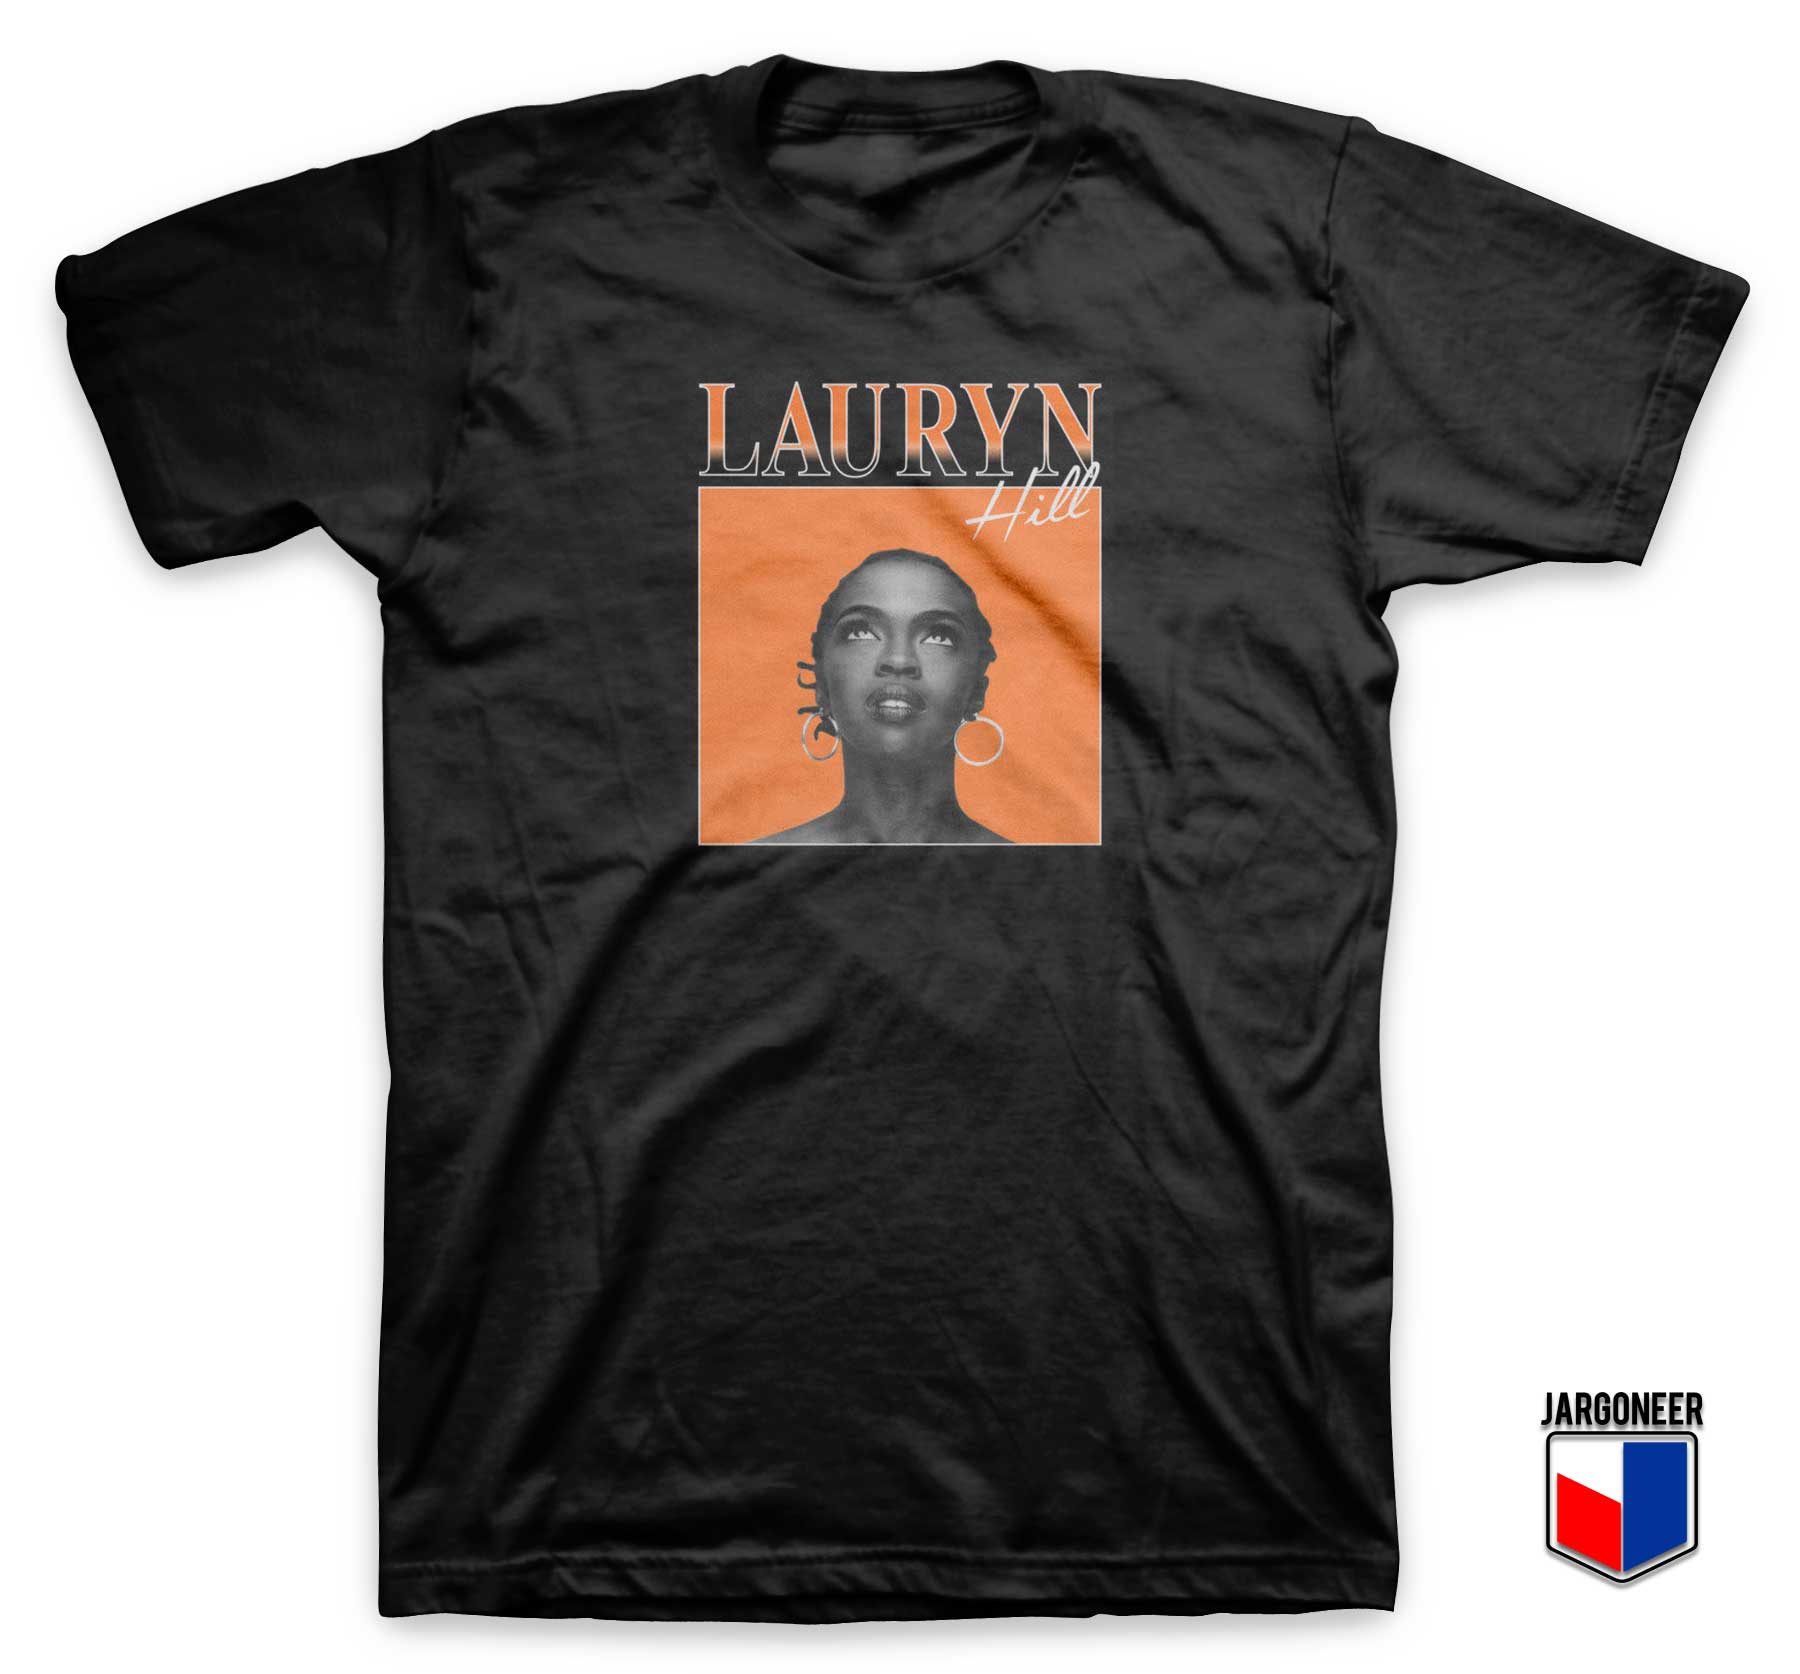 Lauryn Hill T Shirt - Shop Unique Graphic Cool Shirt Designs